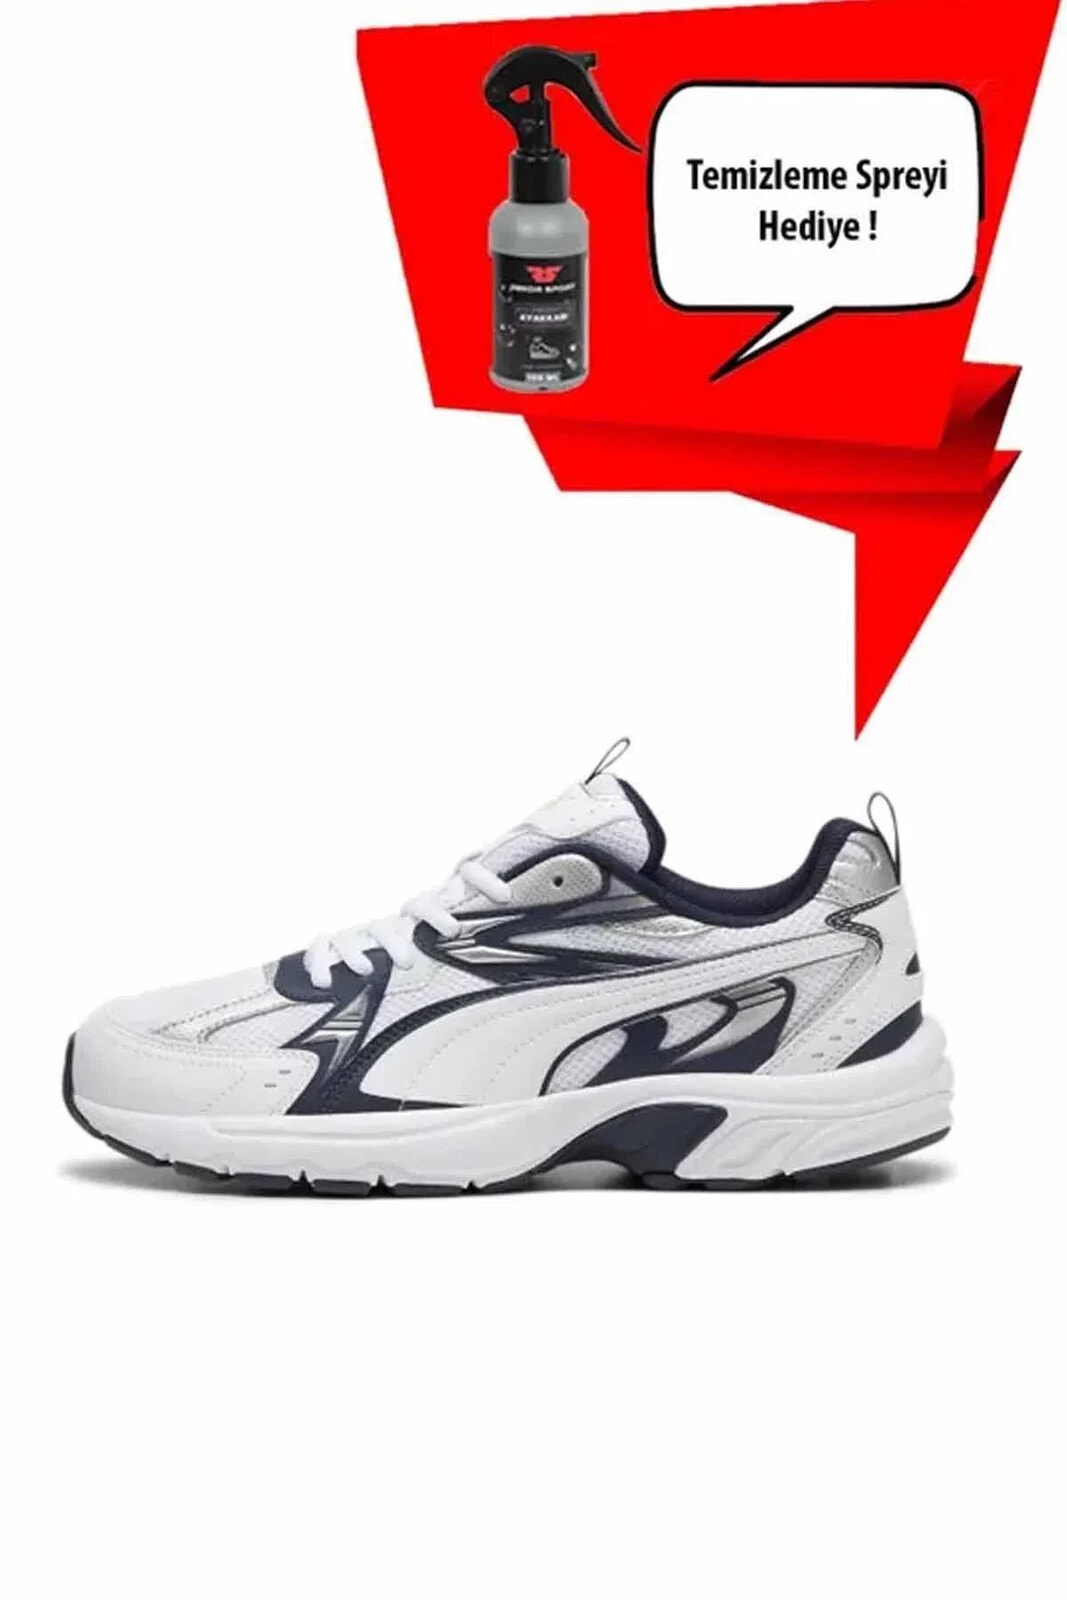 540 Milenio (Temizleme Sipreyi Hediyeli ) Unisex Sneaker Ayakkabı 392322-05-1 Beyaz/Mavi